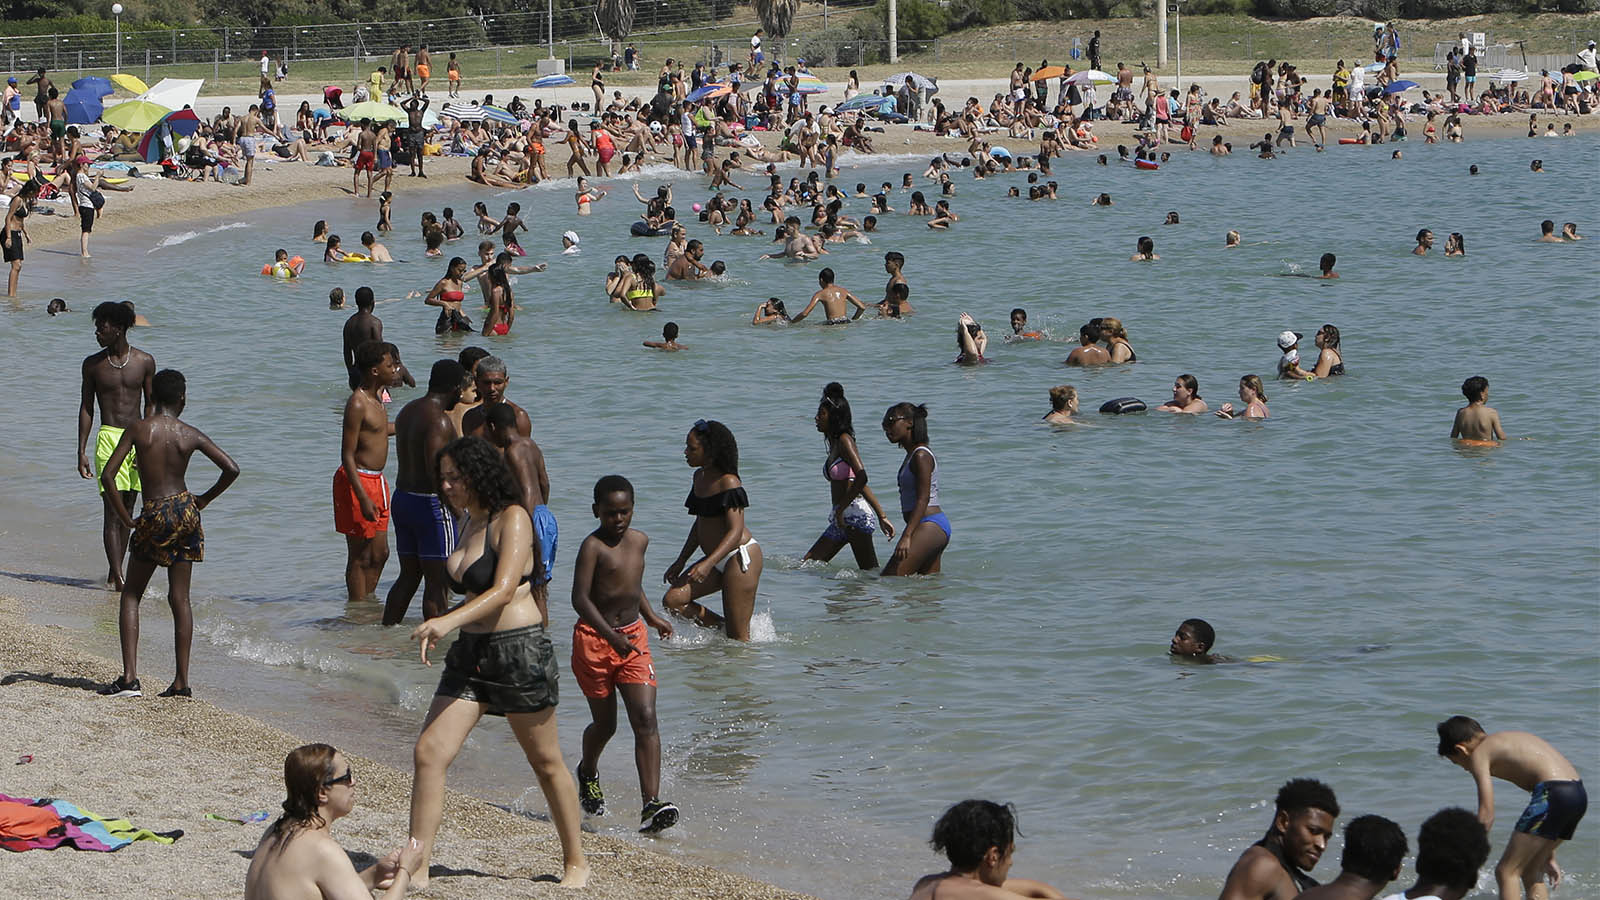 רוחצים בחוף הים במרסיי במהלך גל החום הקיצוני באירופה, יוני 2019 (AP Photo/Claude Paris)